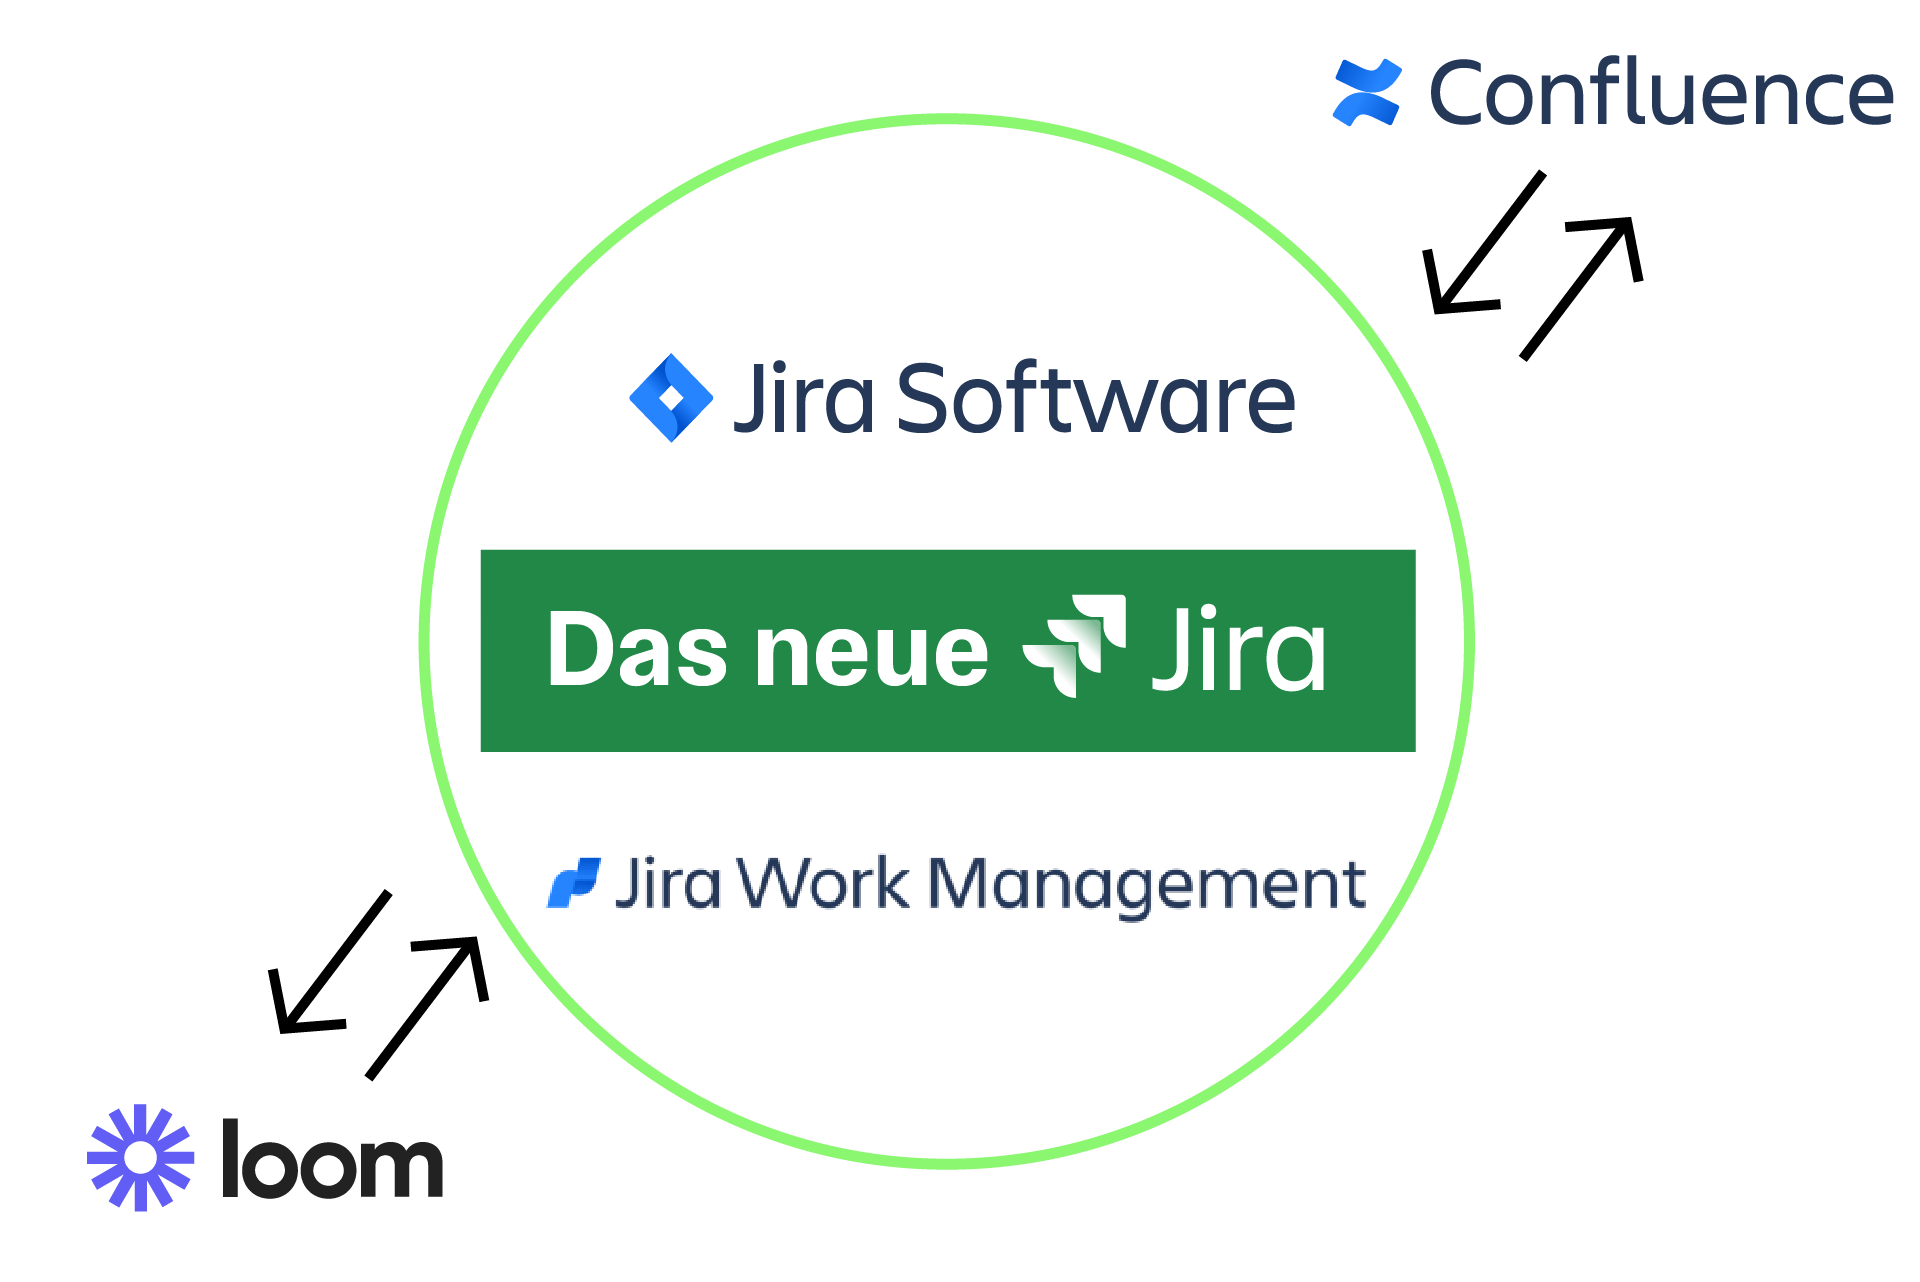 Jira Software und Jira Work Management fusionieren